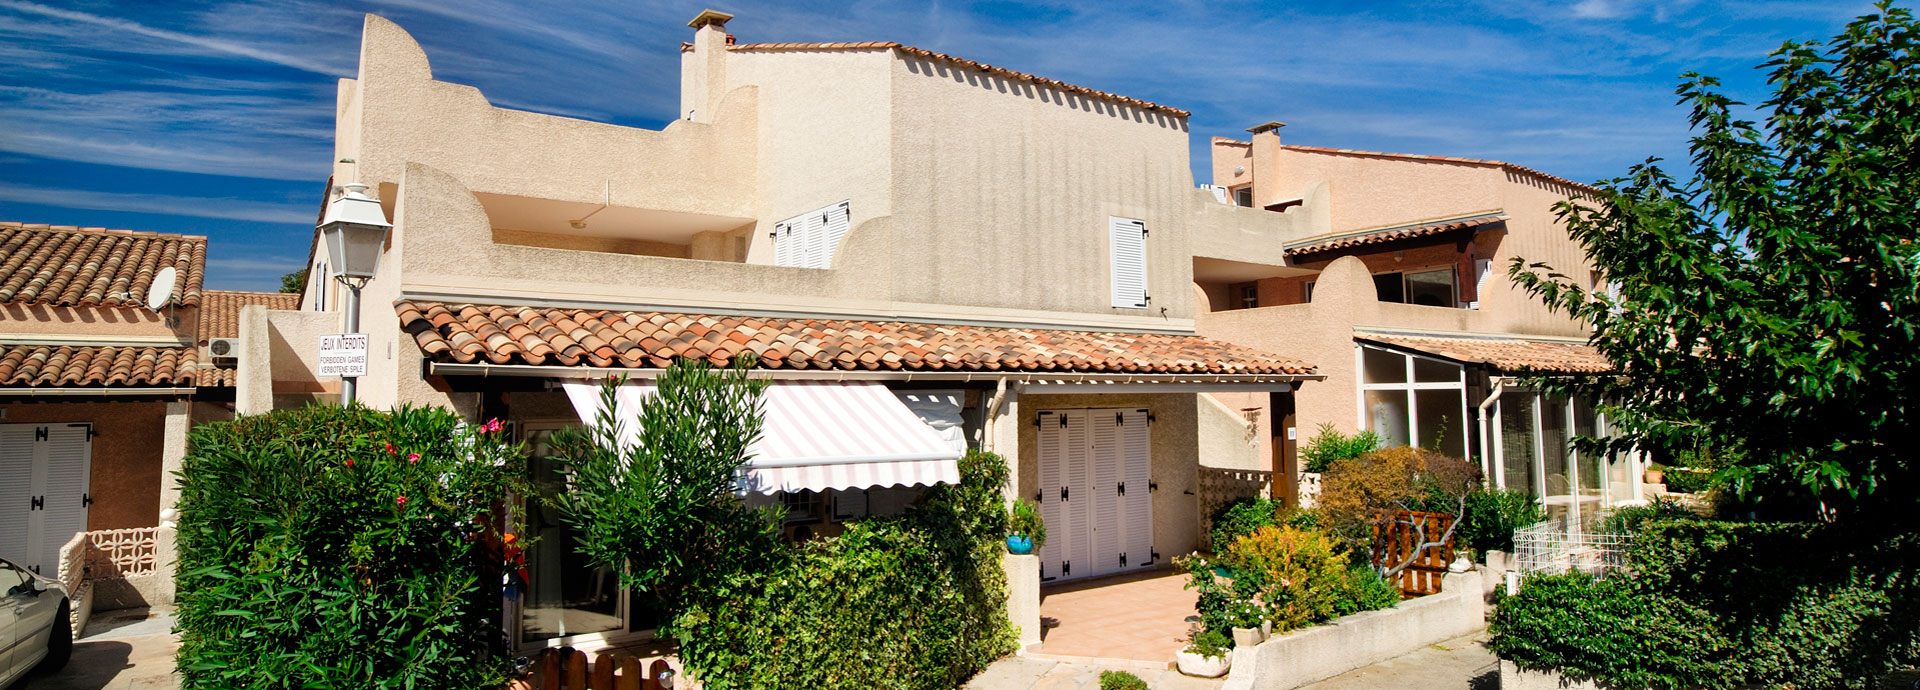 affitto case vacanza a Cap d'Agde : residence Samaria Village